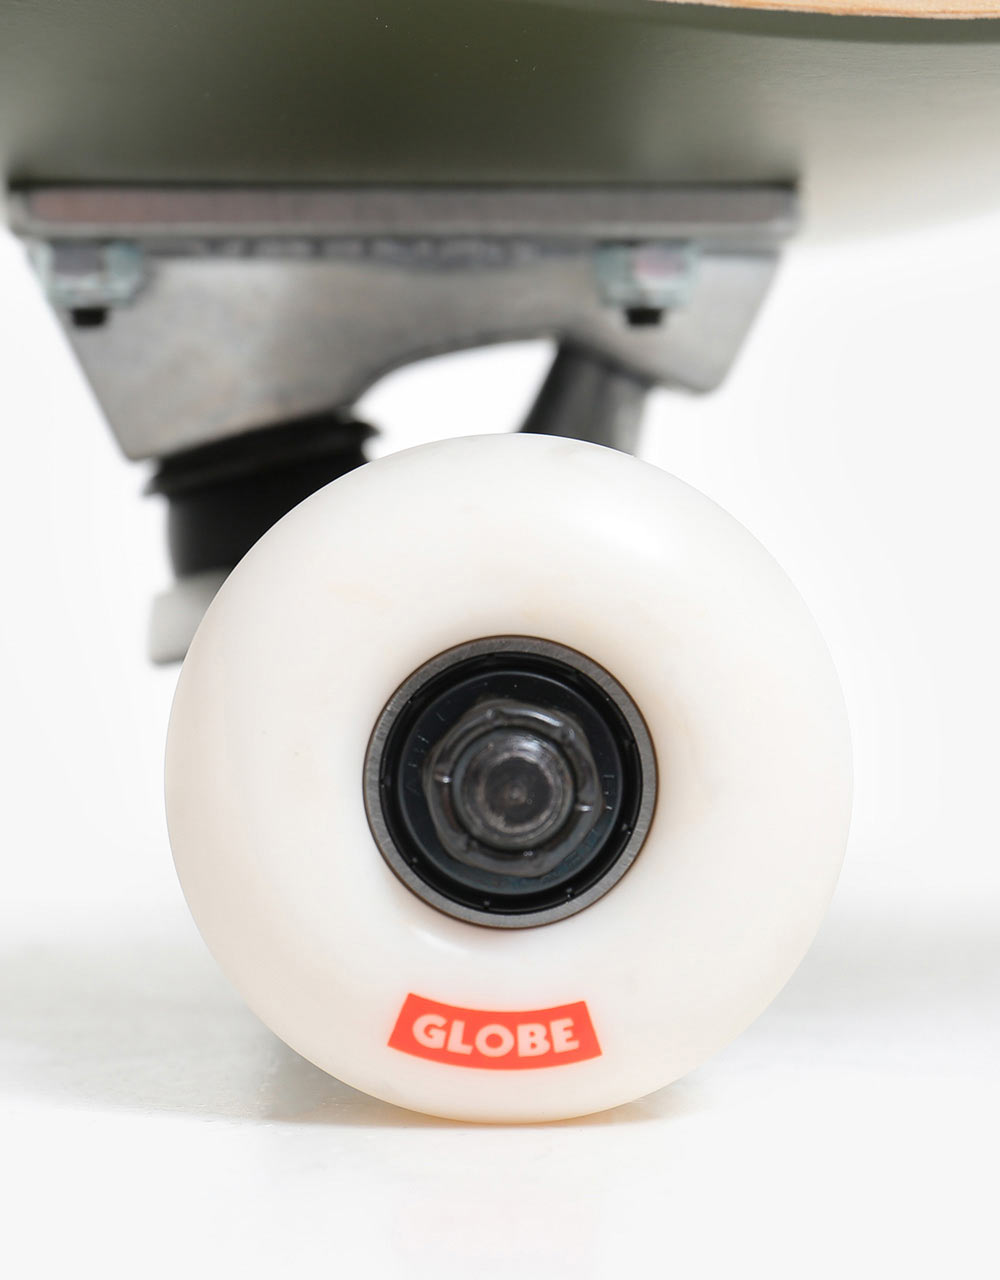 Globe Goodstock Complete Skateboard - 8.25"